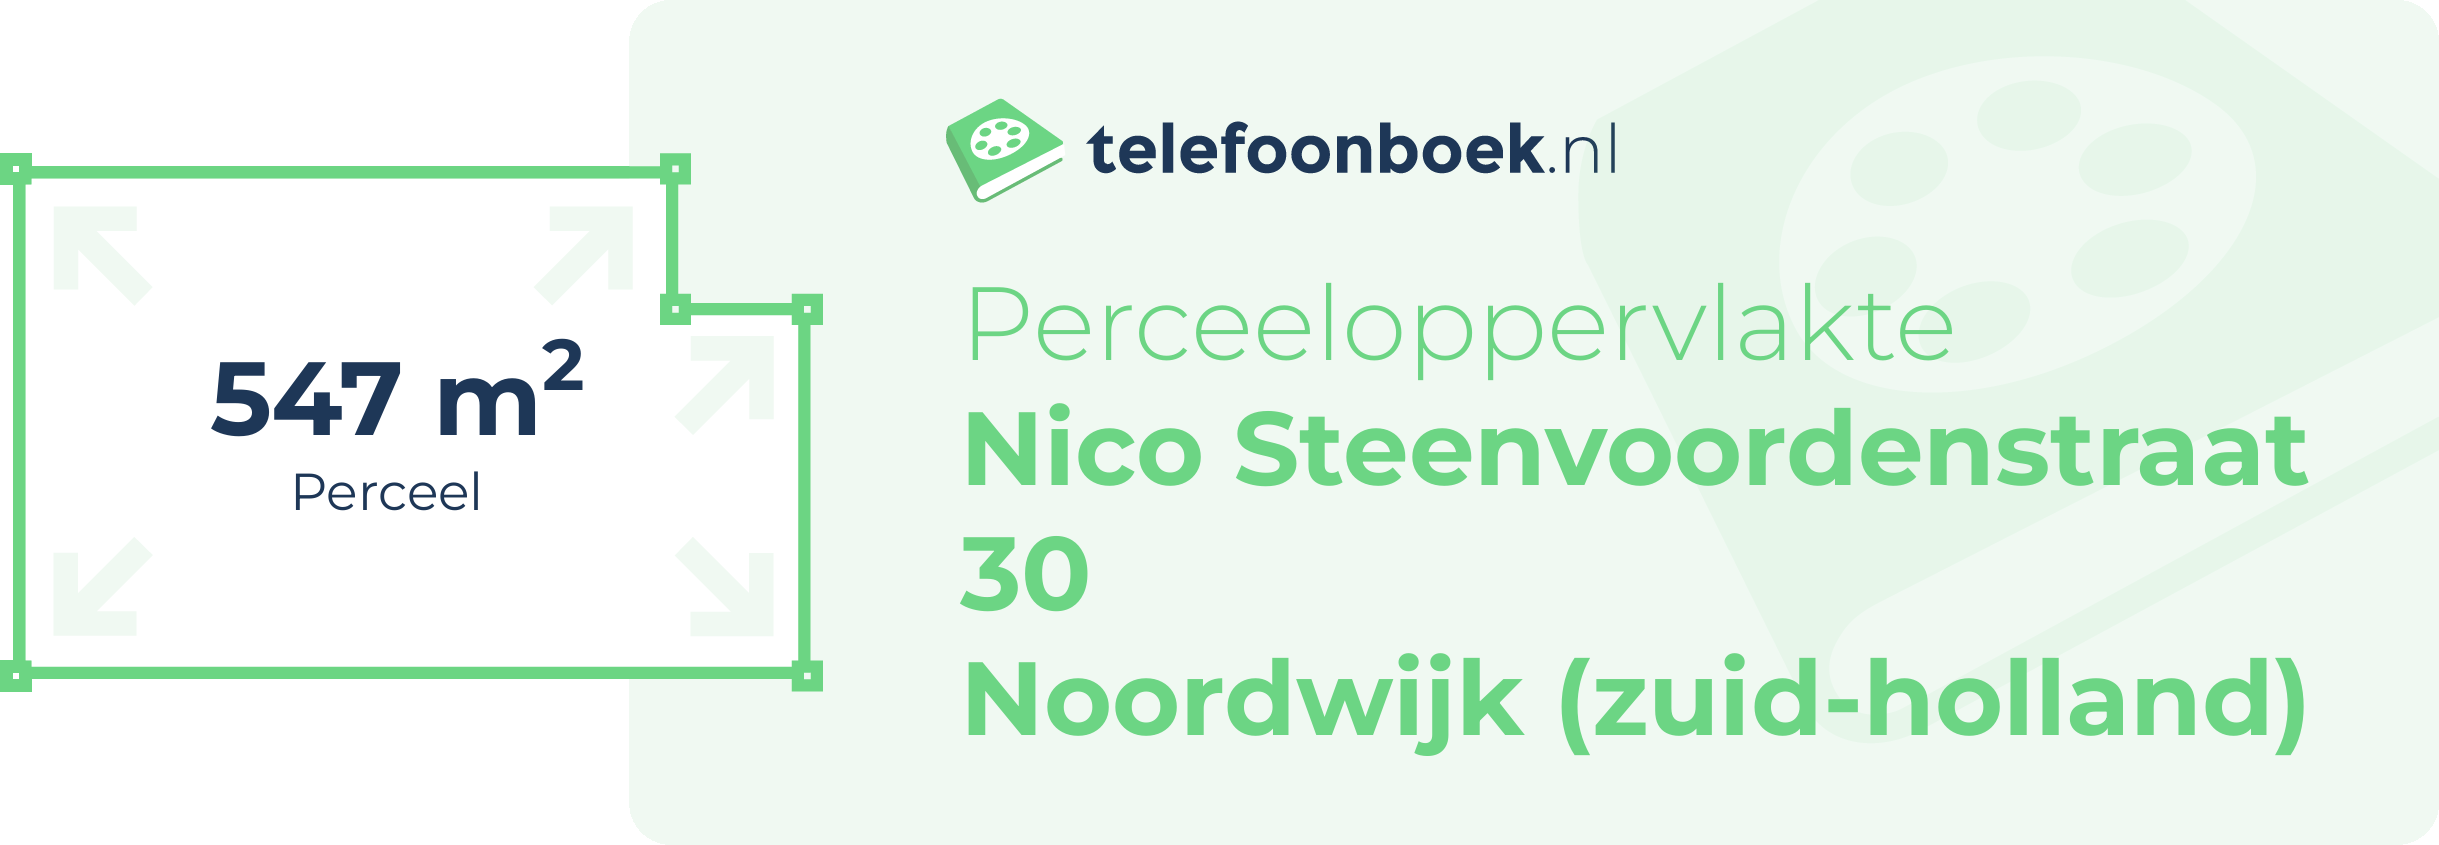 Perceeloppervlakte Nico Steenvoordenstraat 30 Noordwijk (Zuid-Holland)